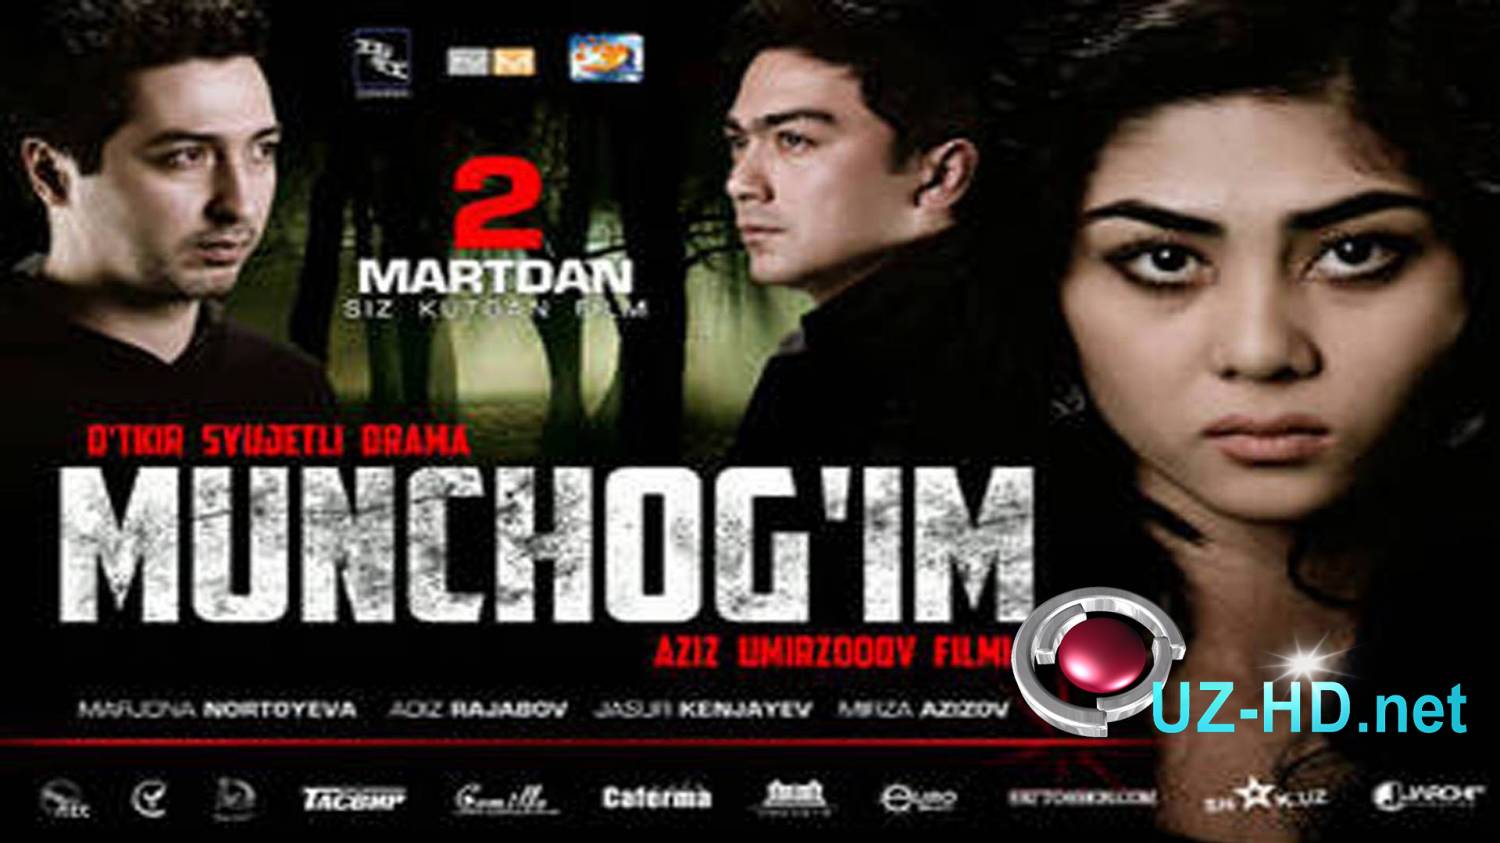 Munchog'im (o'zbek film) | Мунчогим (узбекфильм) - смотреть онлайн